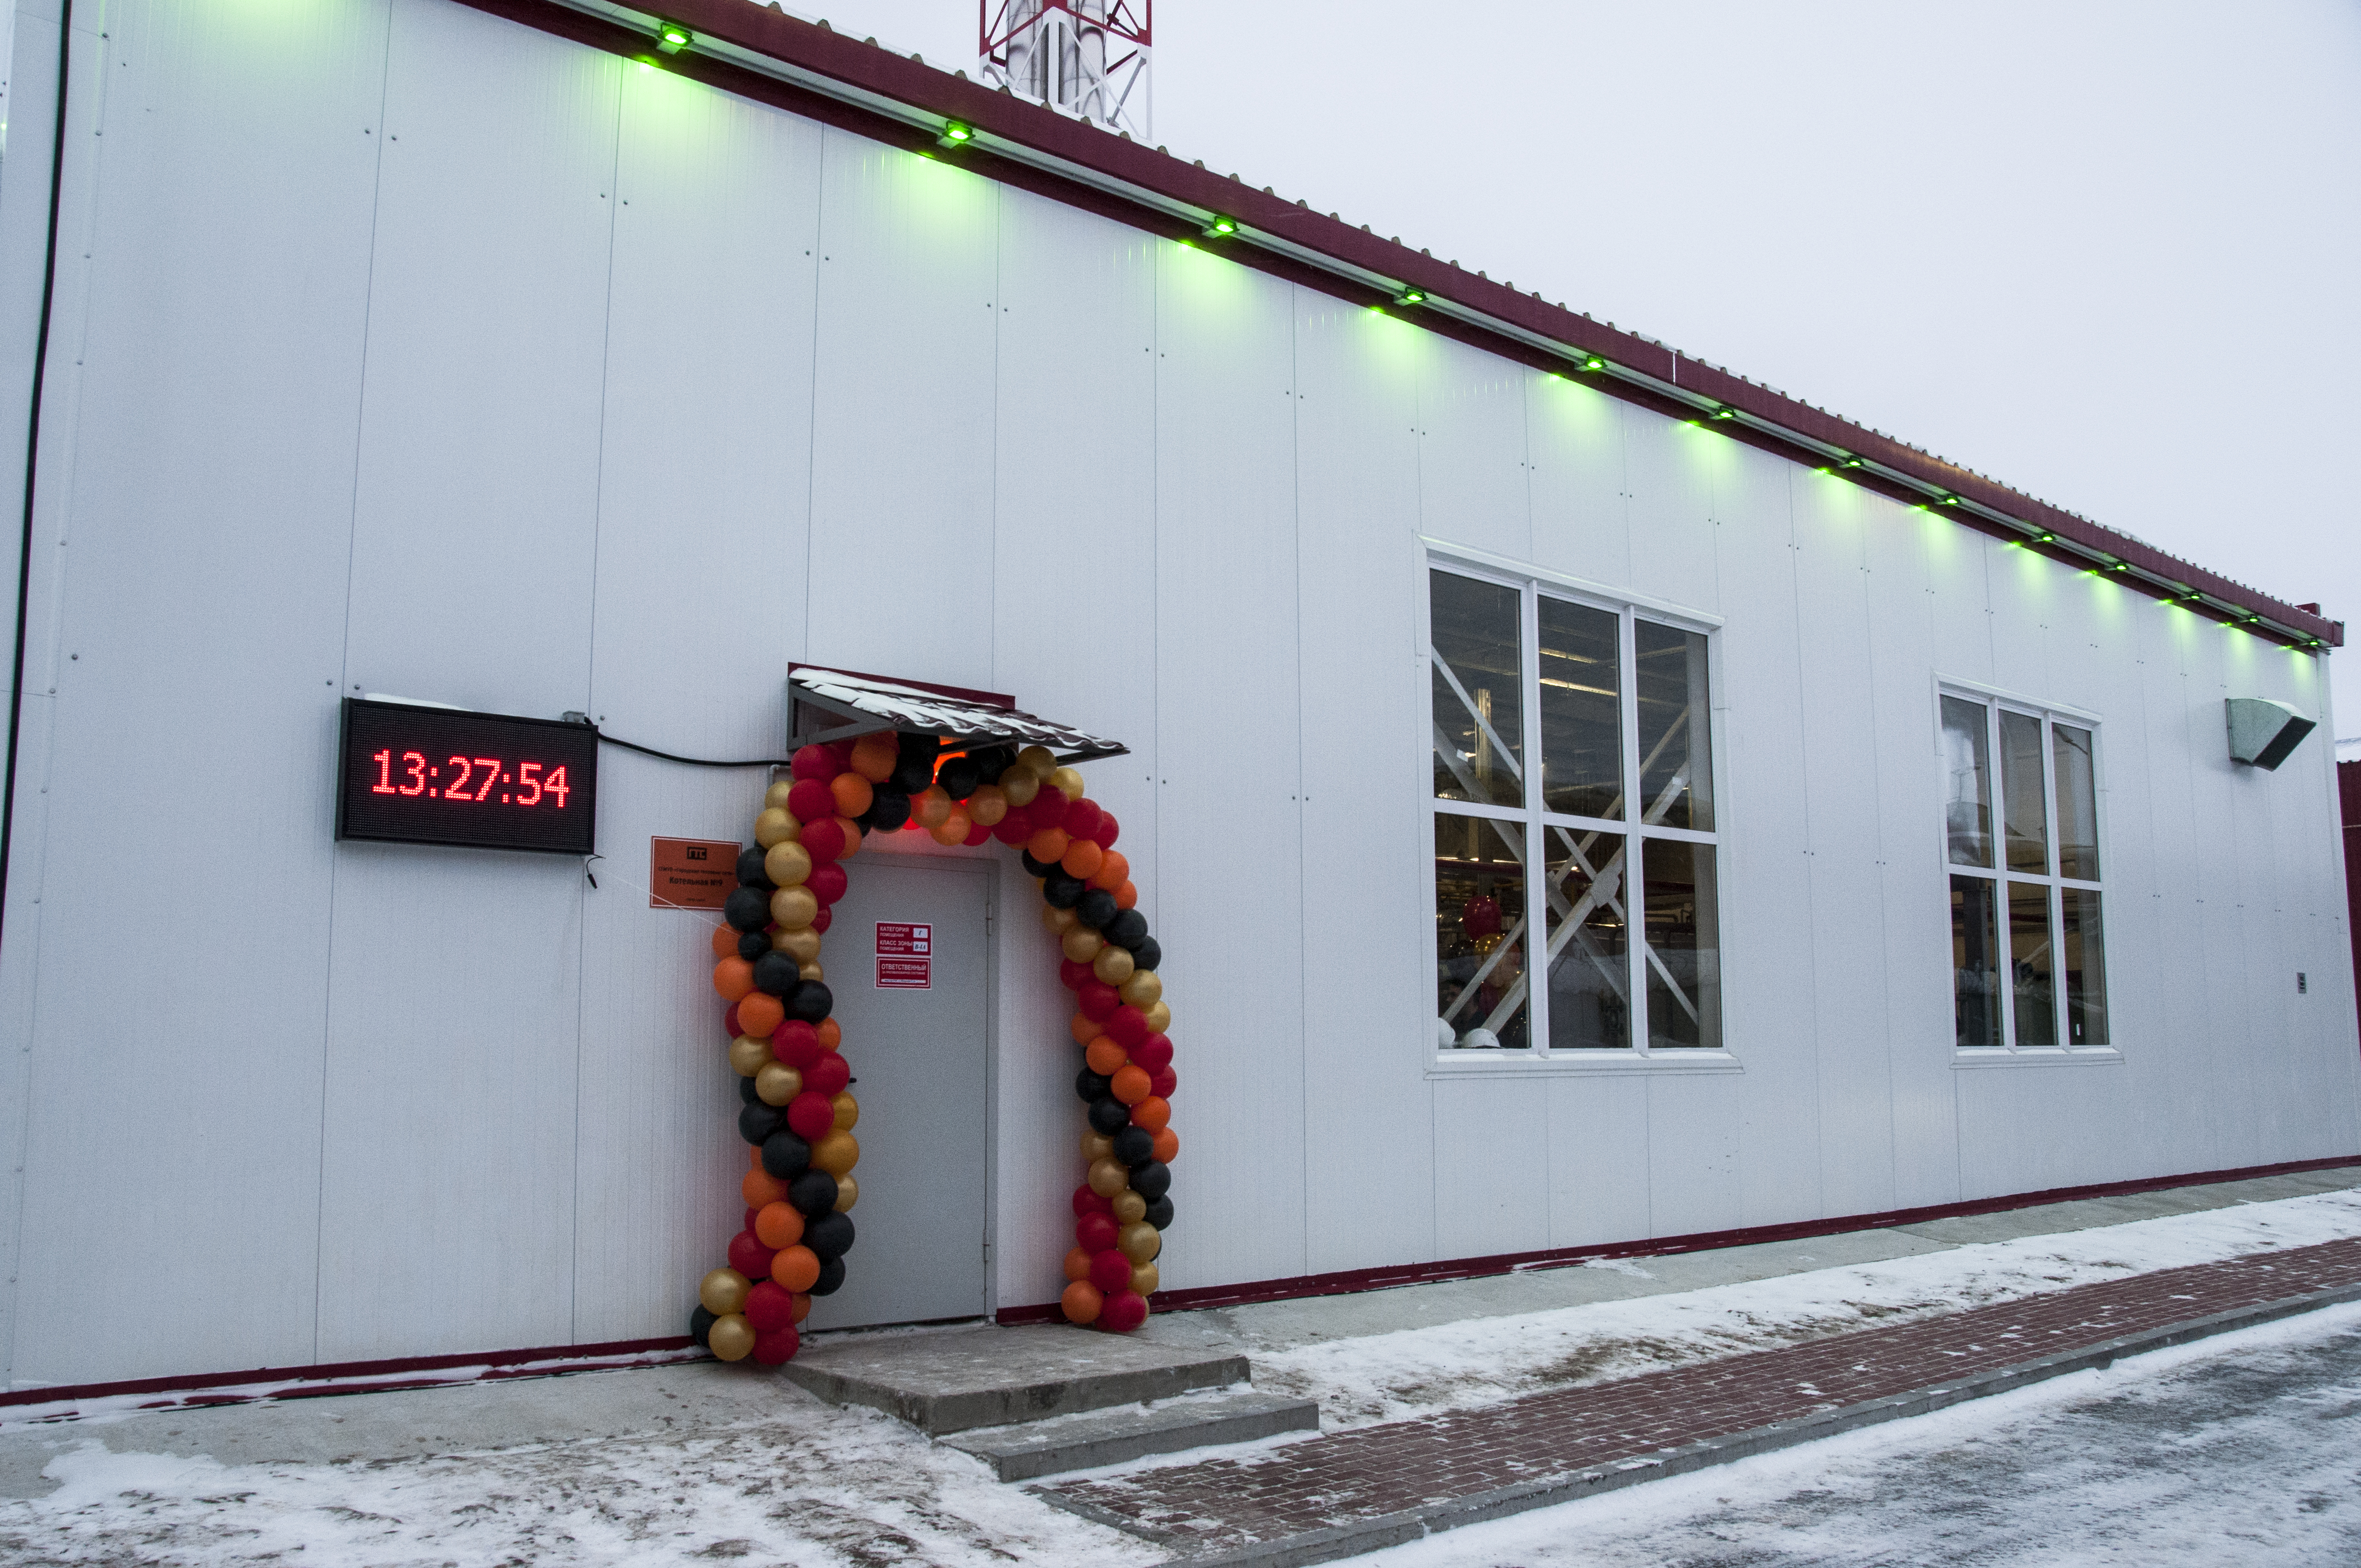 «Городские тепловые сети» запустили в Сургуте полностью автоматизированную котельную